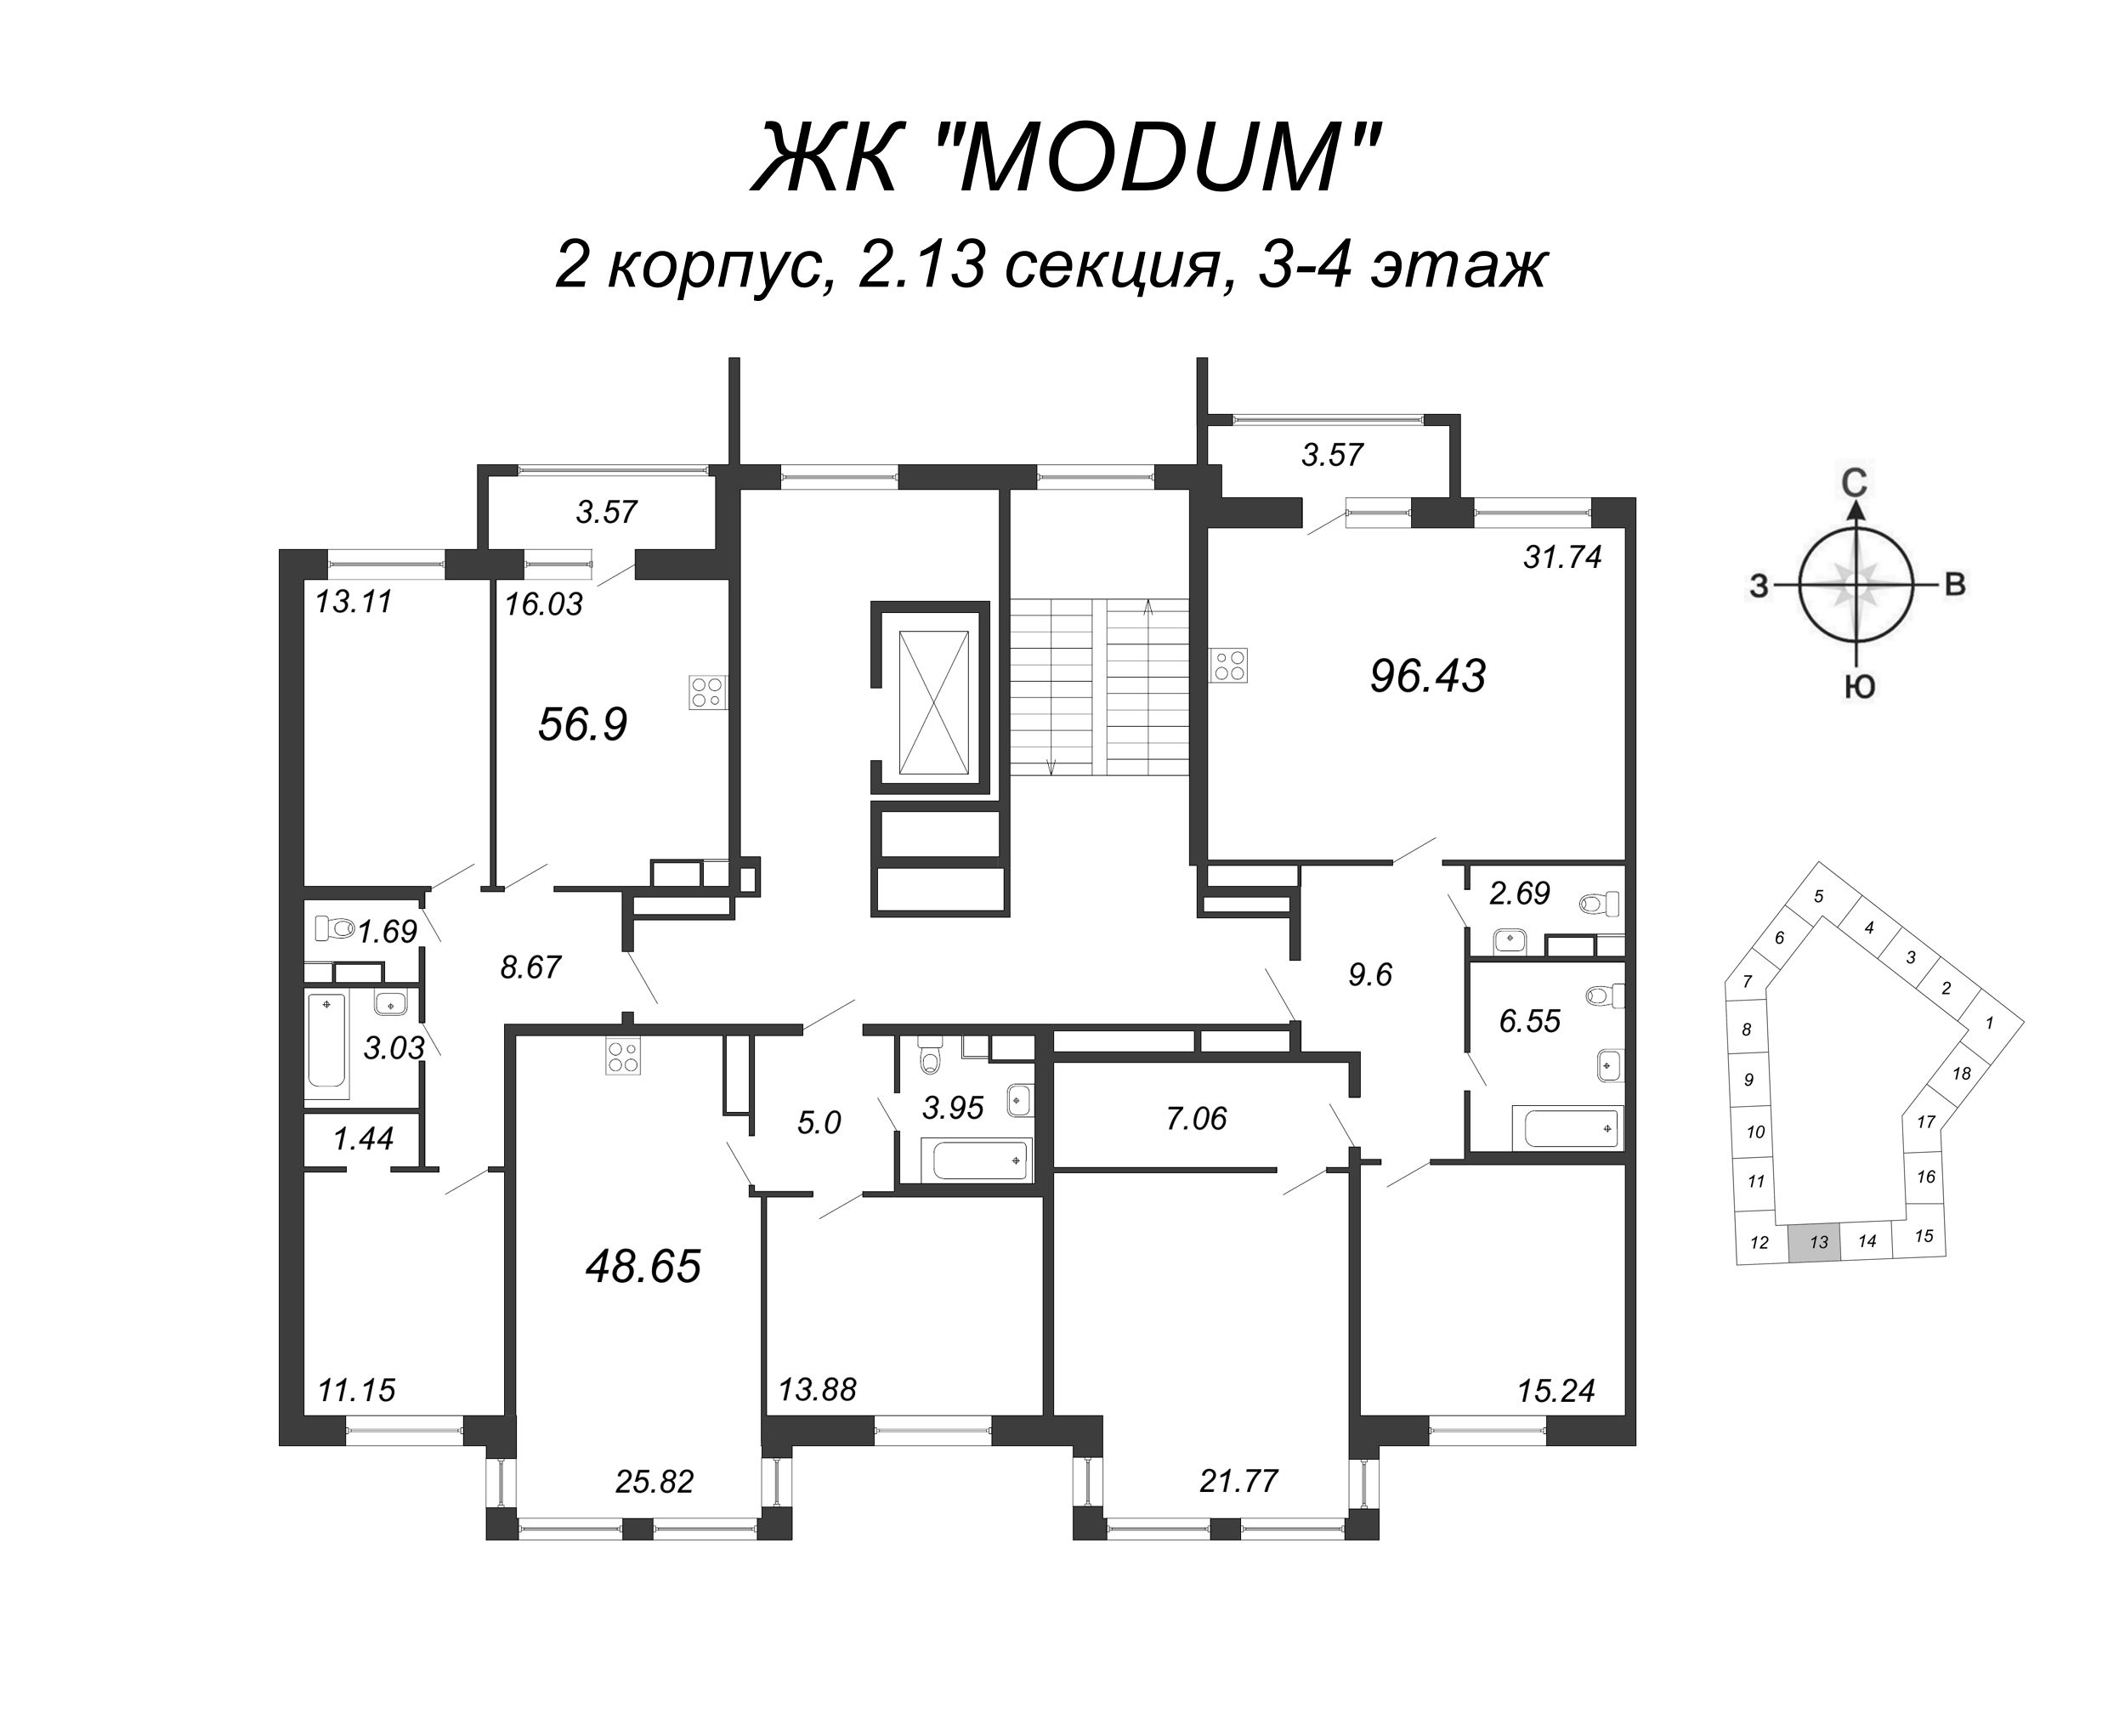 2-комнатная (Евро) квартира, 48.65 м² в ЖК "Modum" - планировка этажа